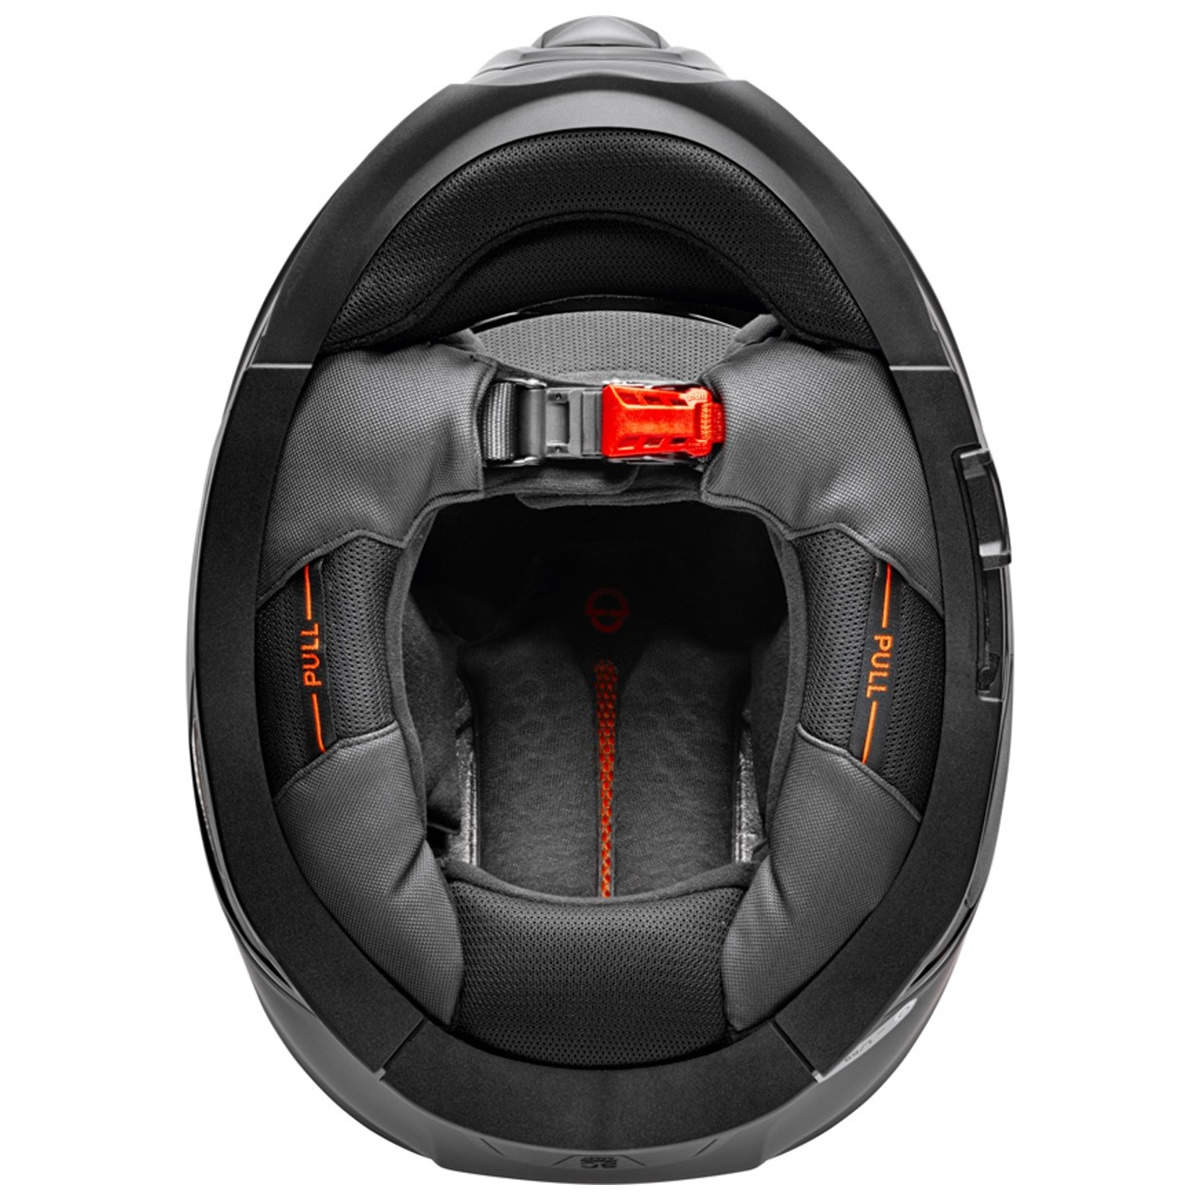 Schuberth Helm S3 Solid, schwarz matt